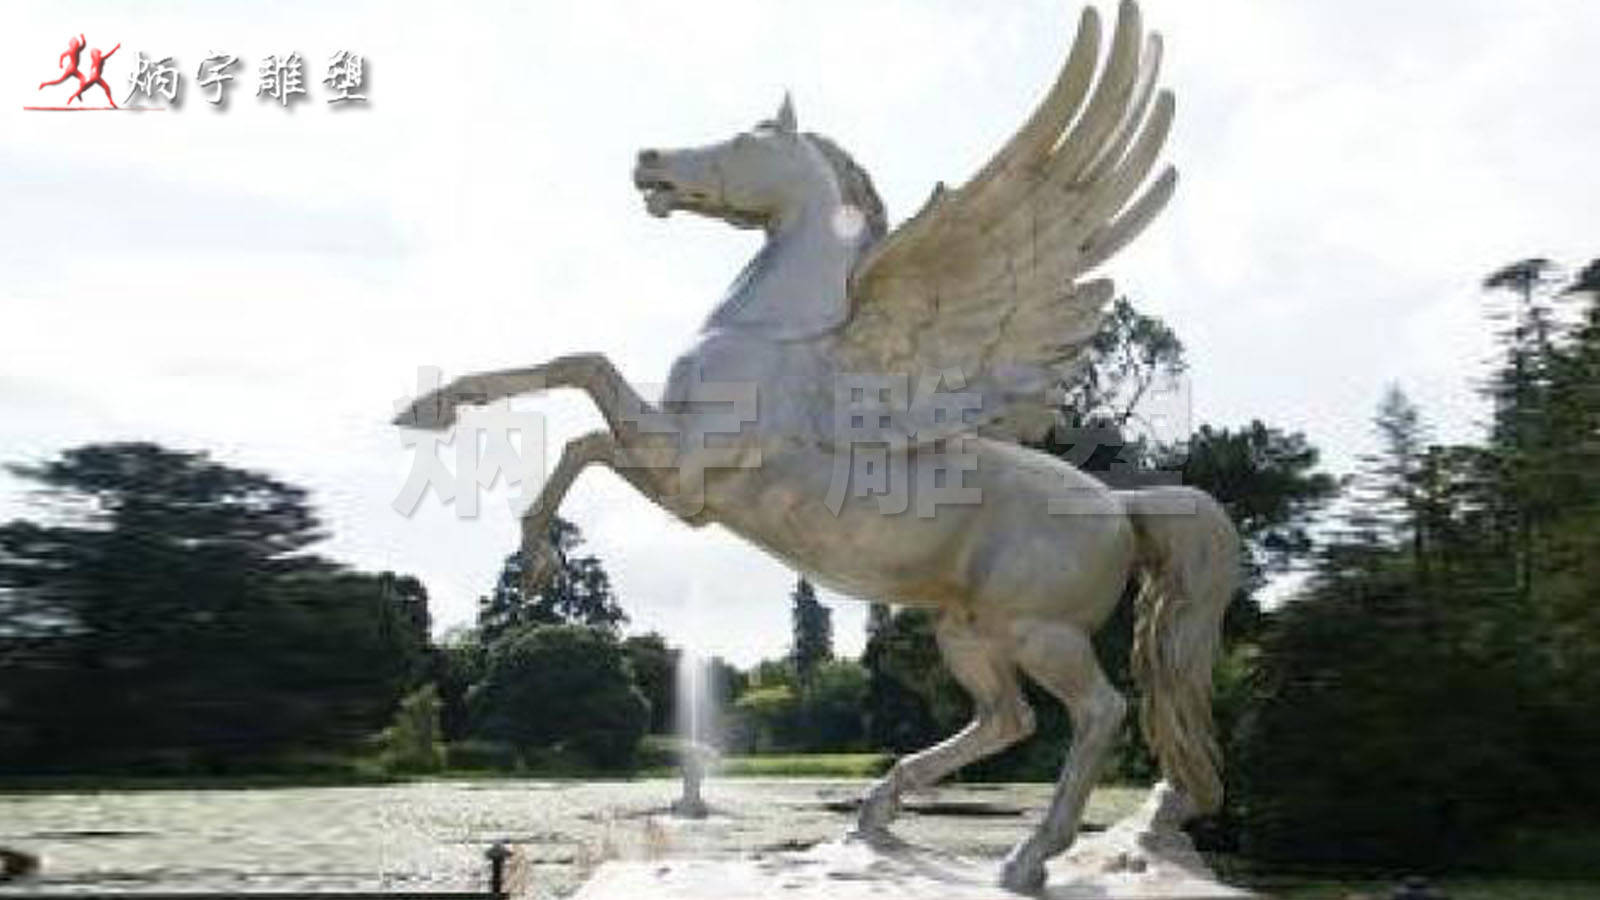 飞马天马雕塑,大型广场雕塑,不锈钢动物雕塑龙马精神雕塑,飞马天马